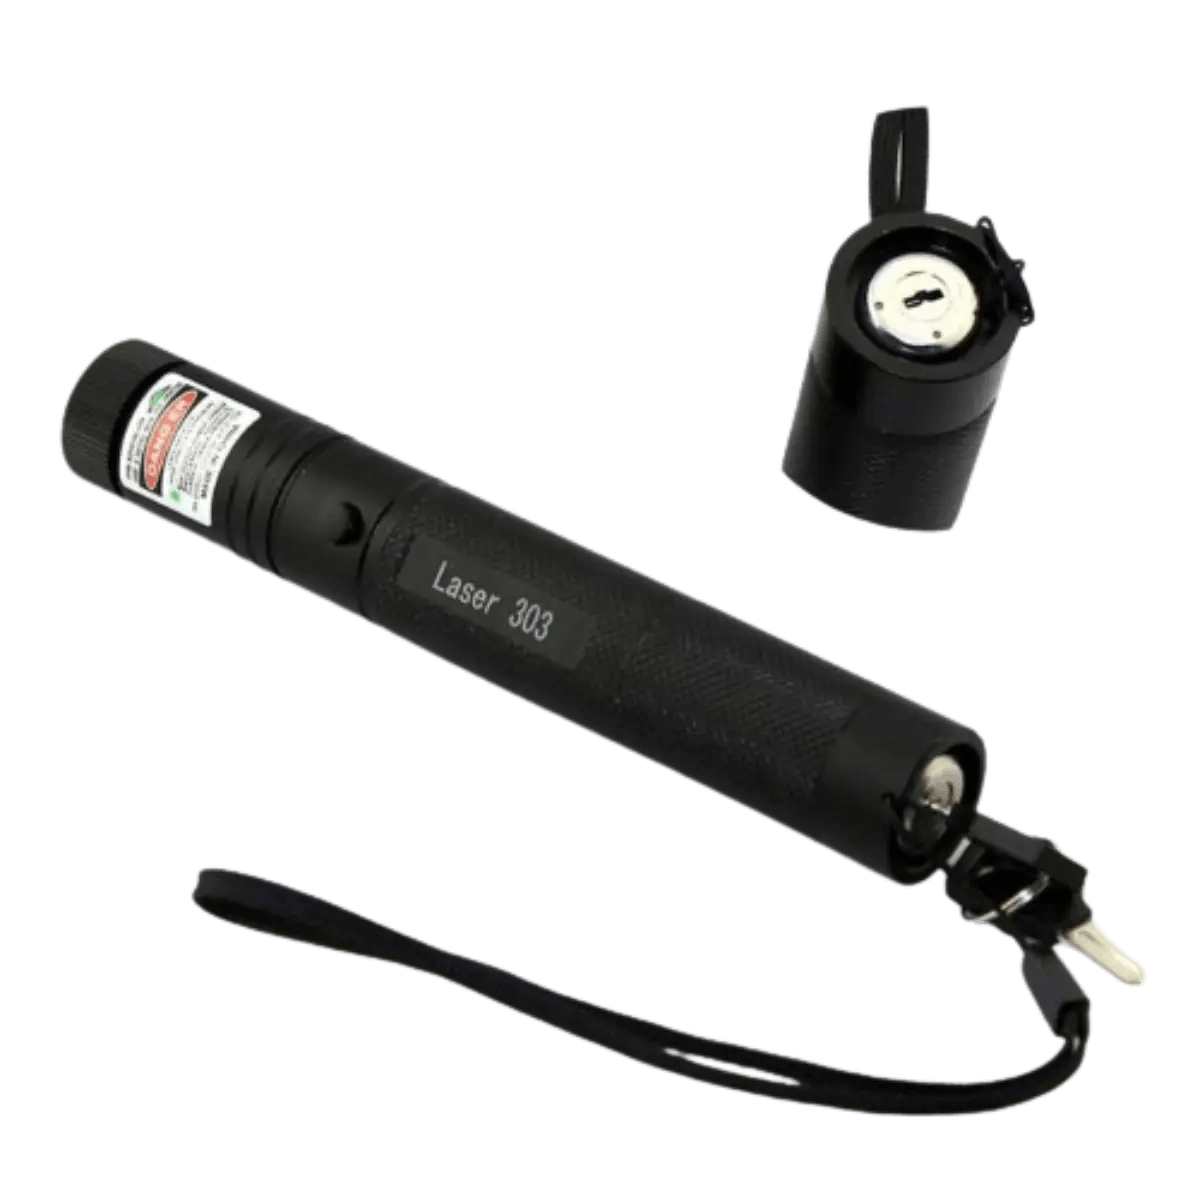 Pointeur Laser a rayon Vert compatible Rail 11 mm et 22 mm